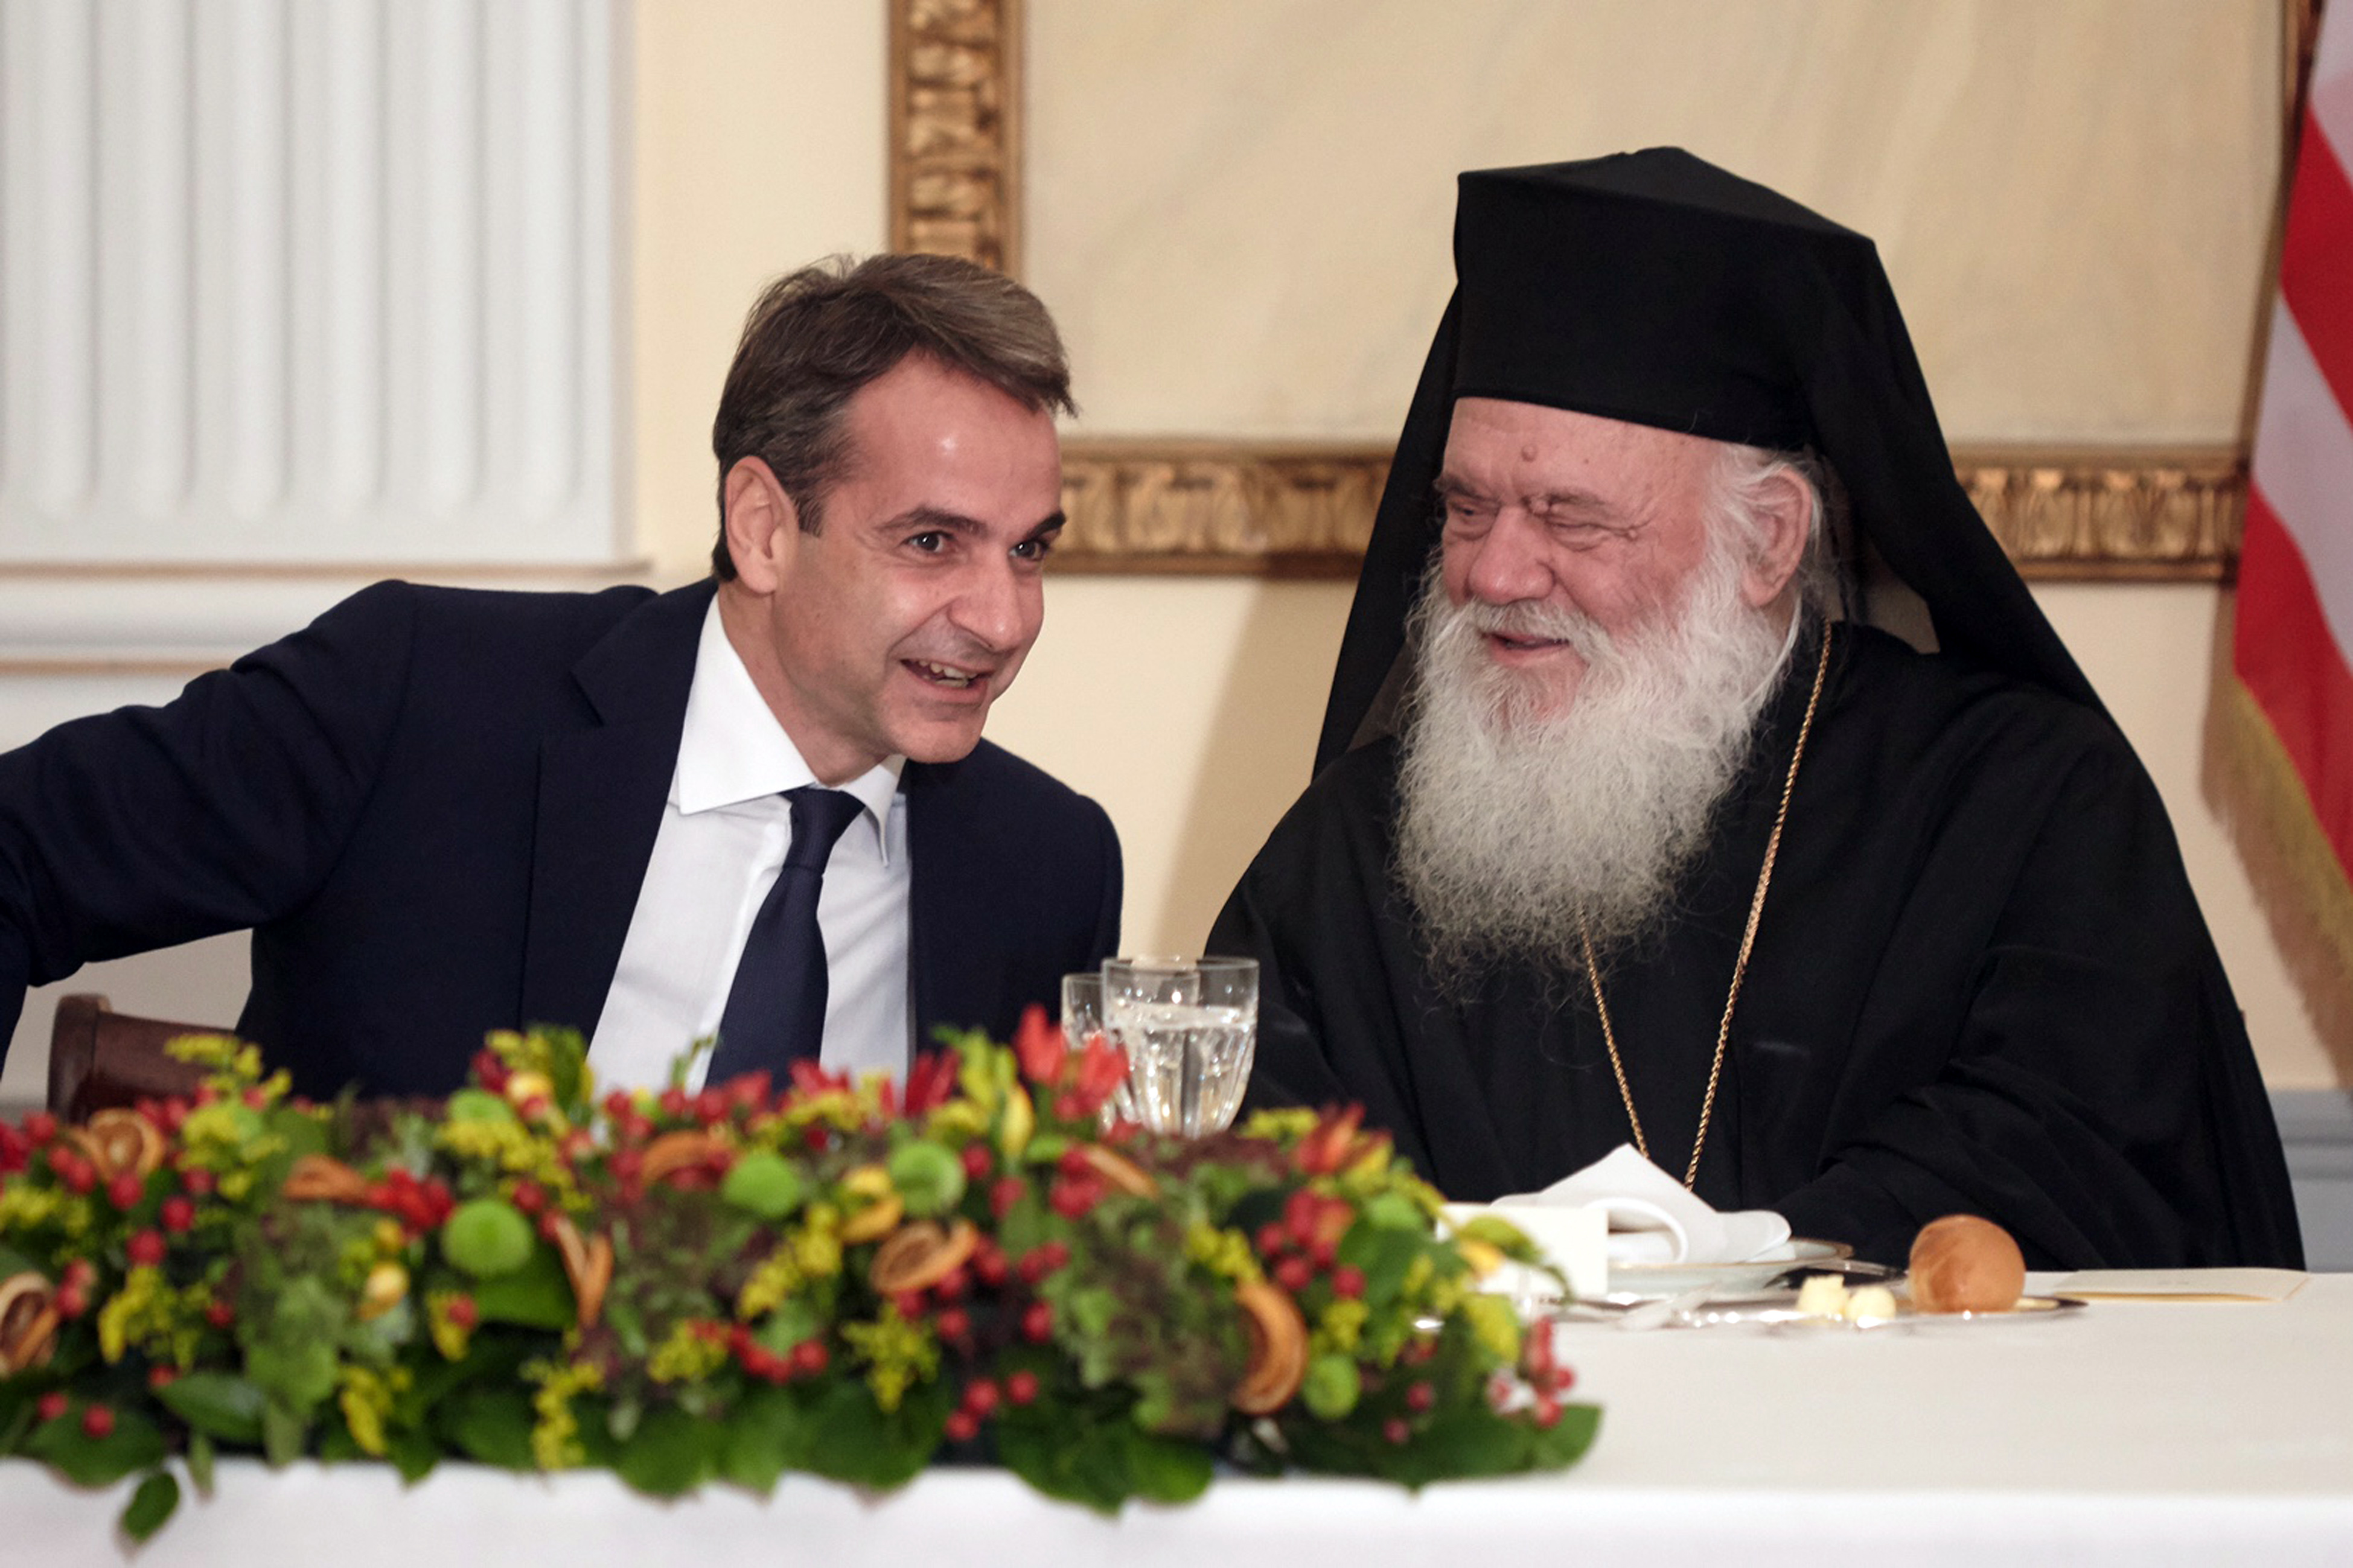 Τι συζήτησαν στο σαρακοστιανό τραπέζι ο Αρχιεπίσκοπος Ιερώνυμος με τον Κ. Μητσοτάκη